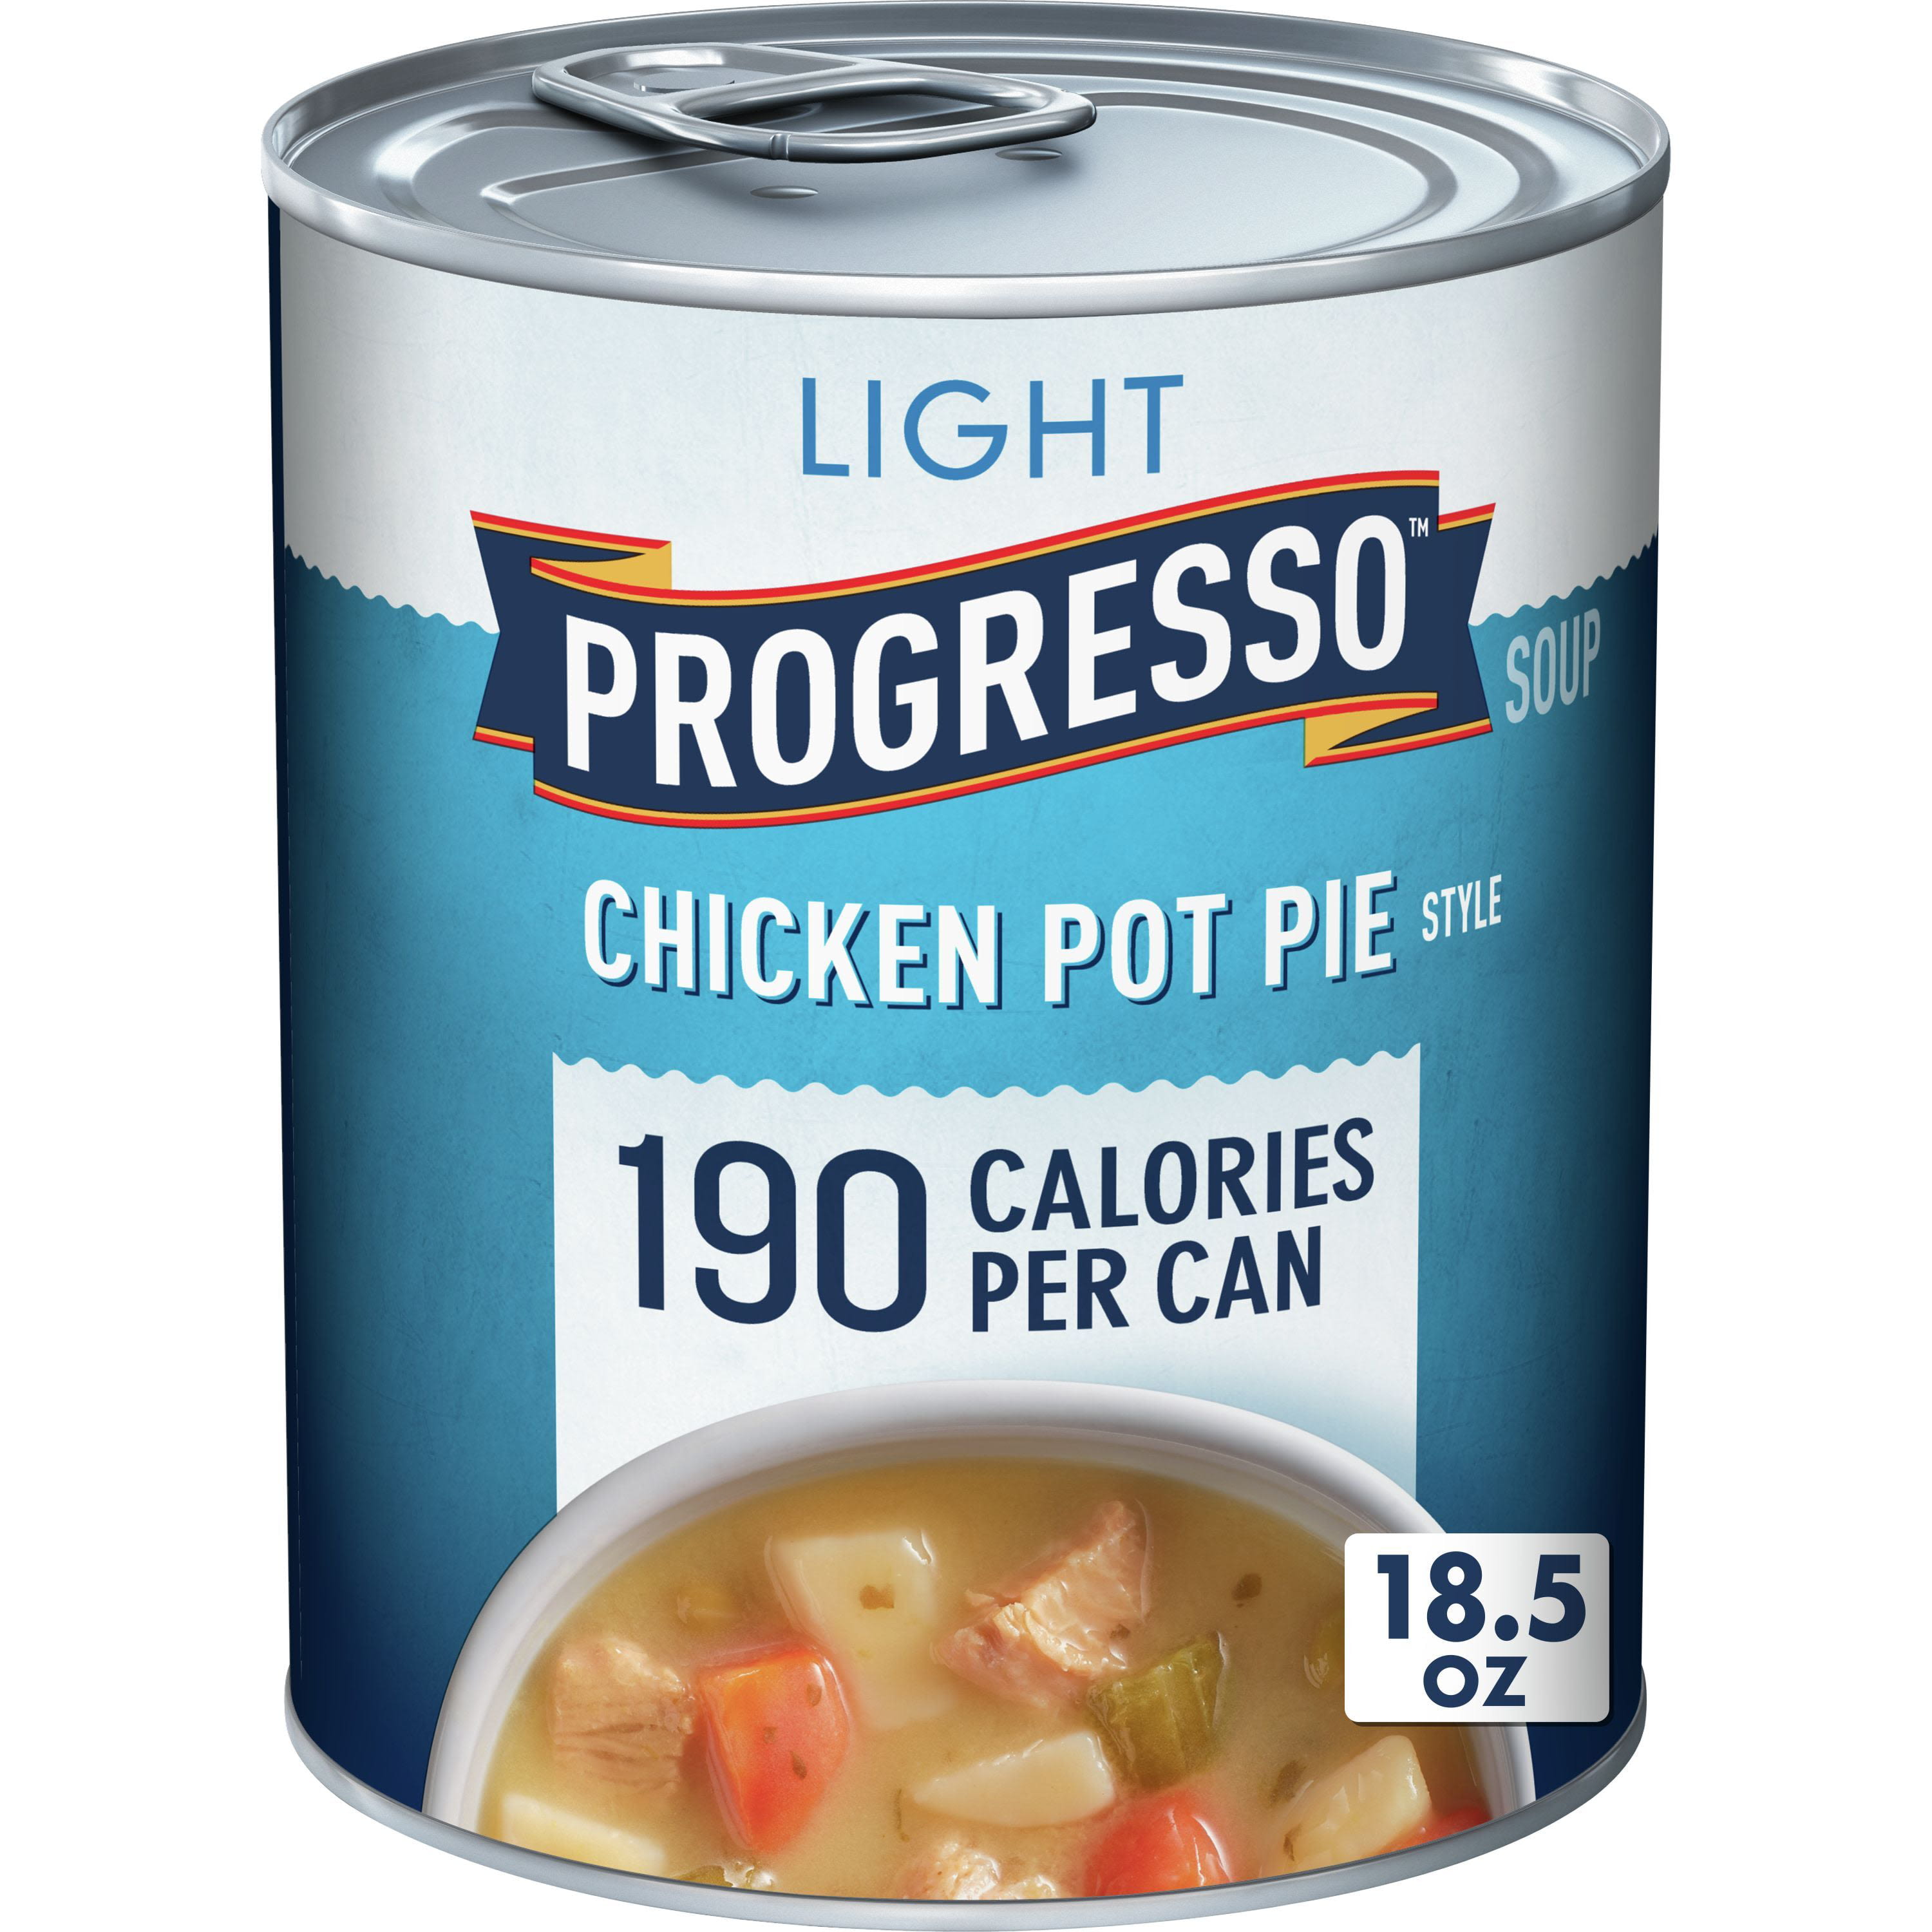 Lightened Chicken Pot Pie